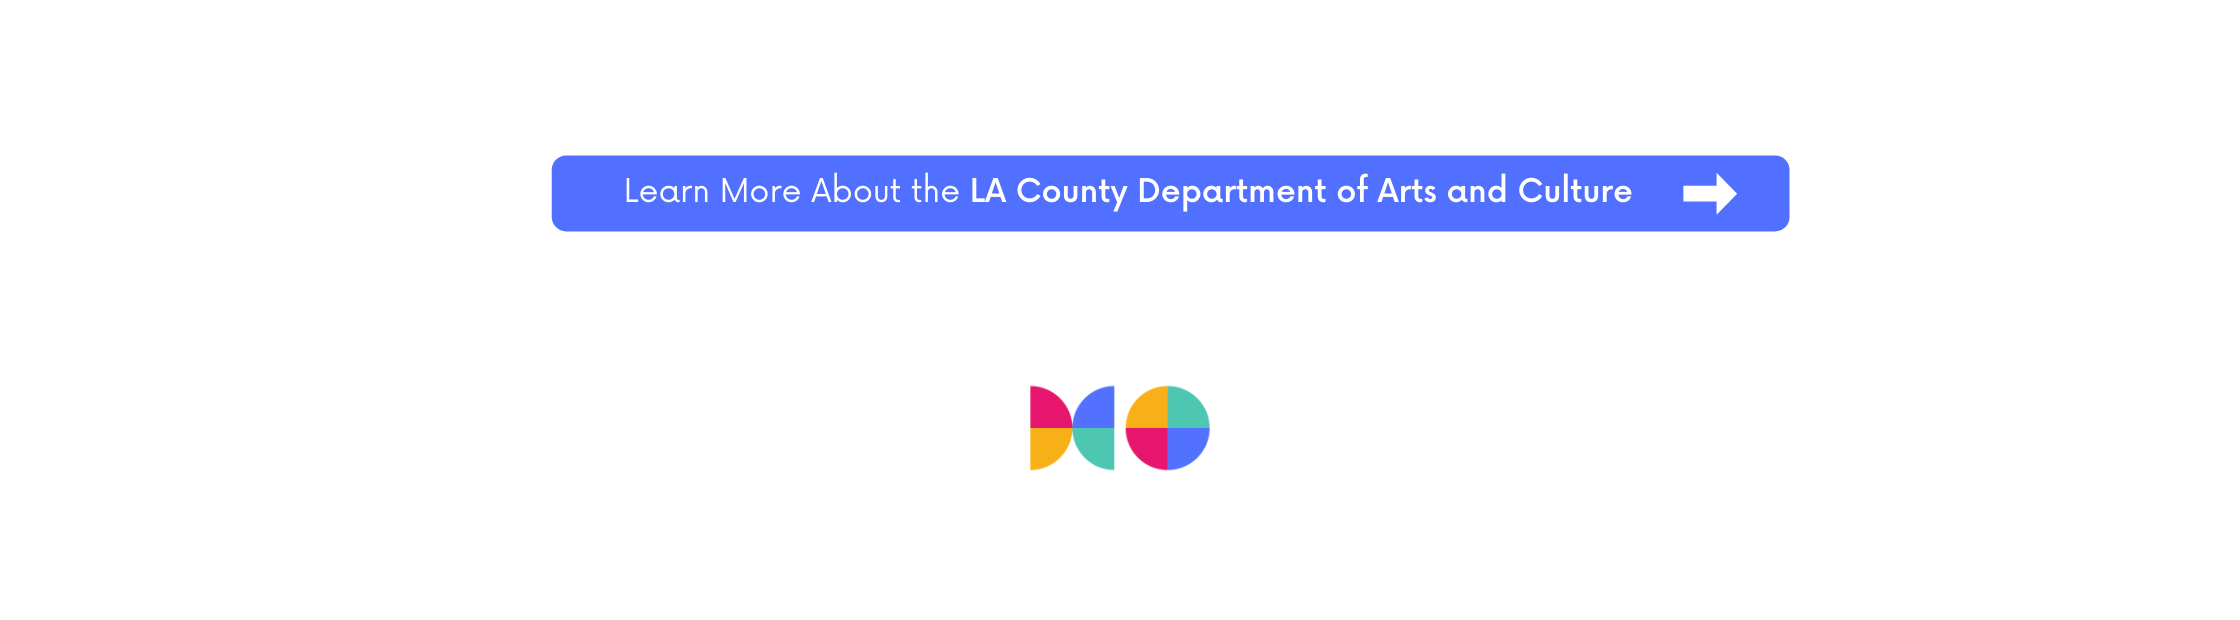 了解更多关于洛杉矶县艺术和文化部的信息